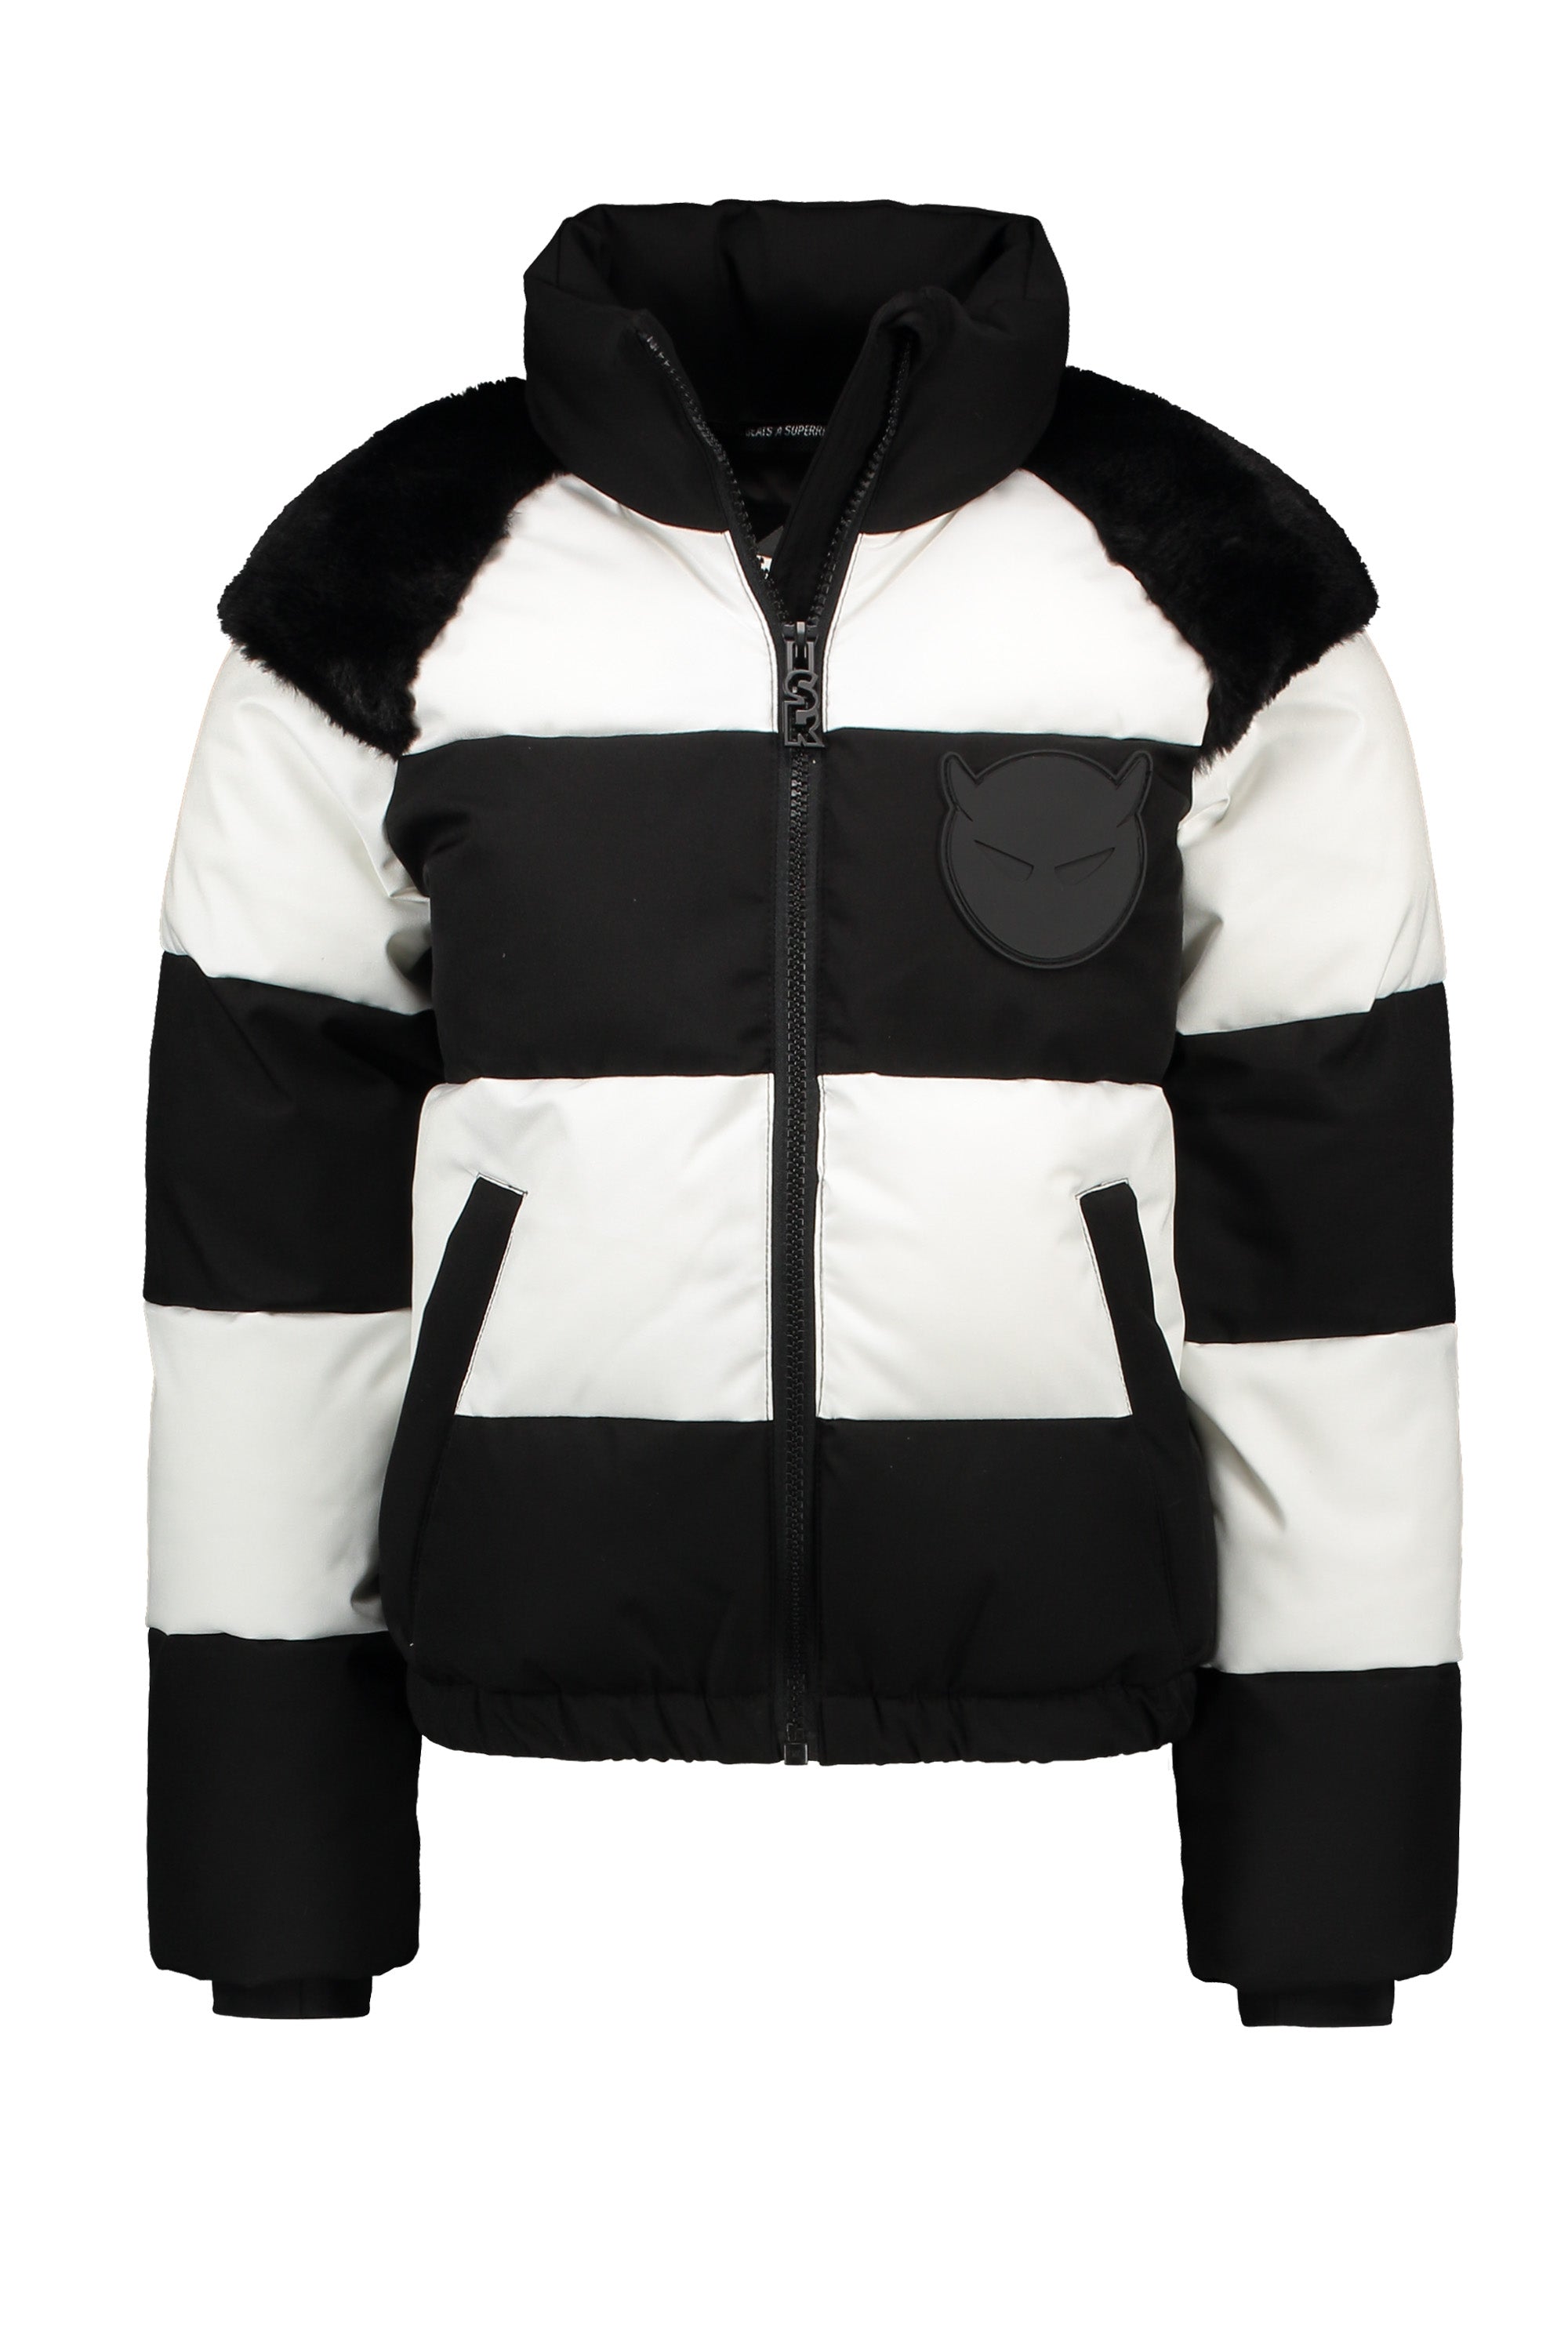 Super Rebel Winter Jacket STACK Black/White